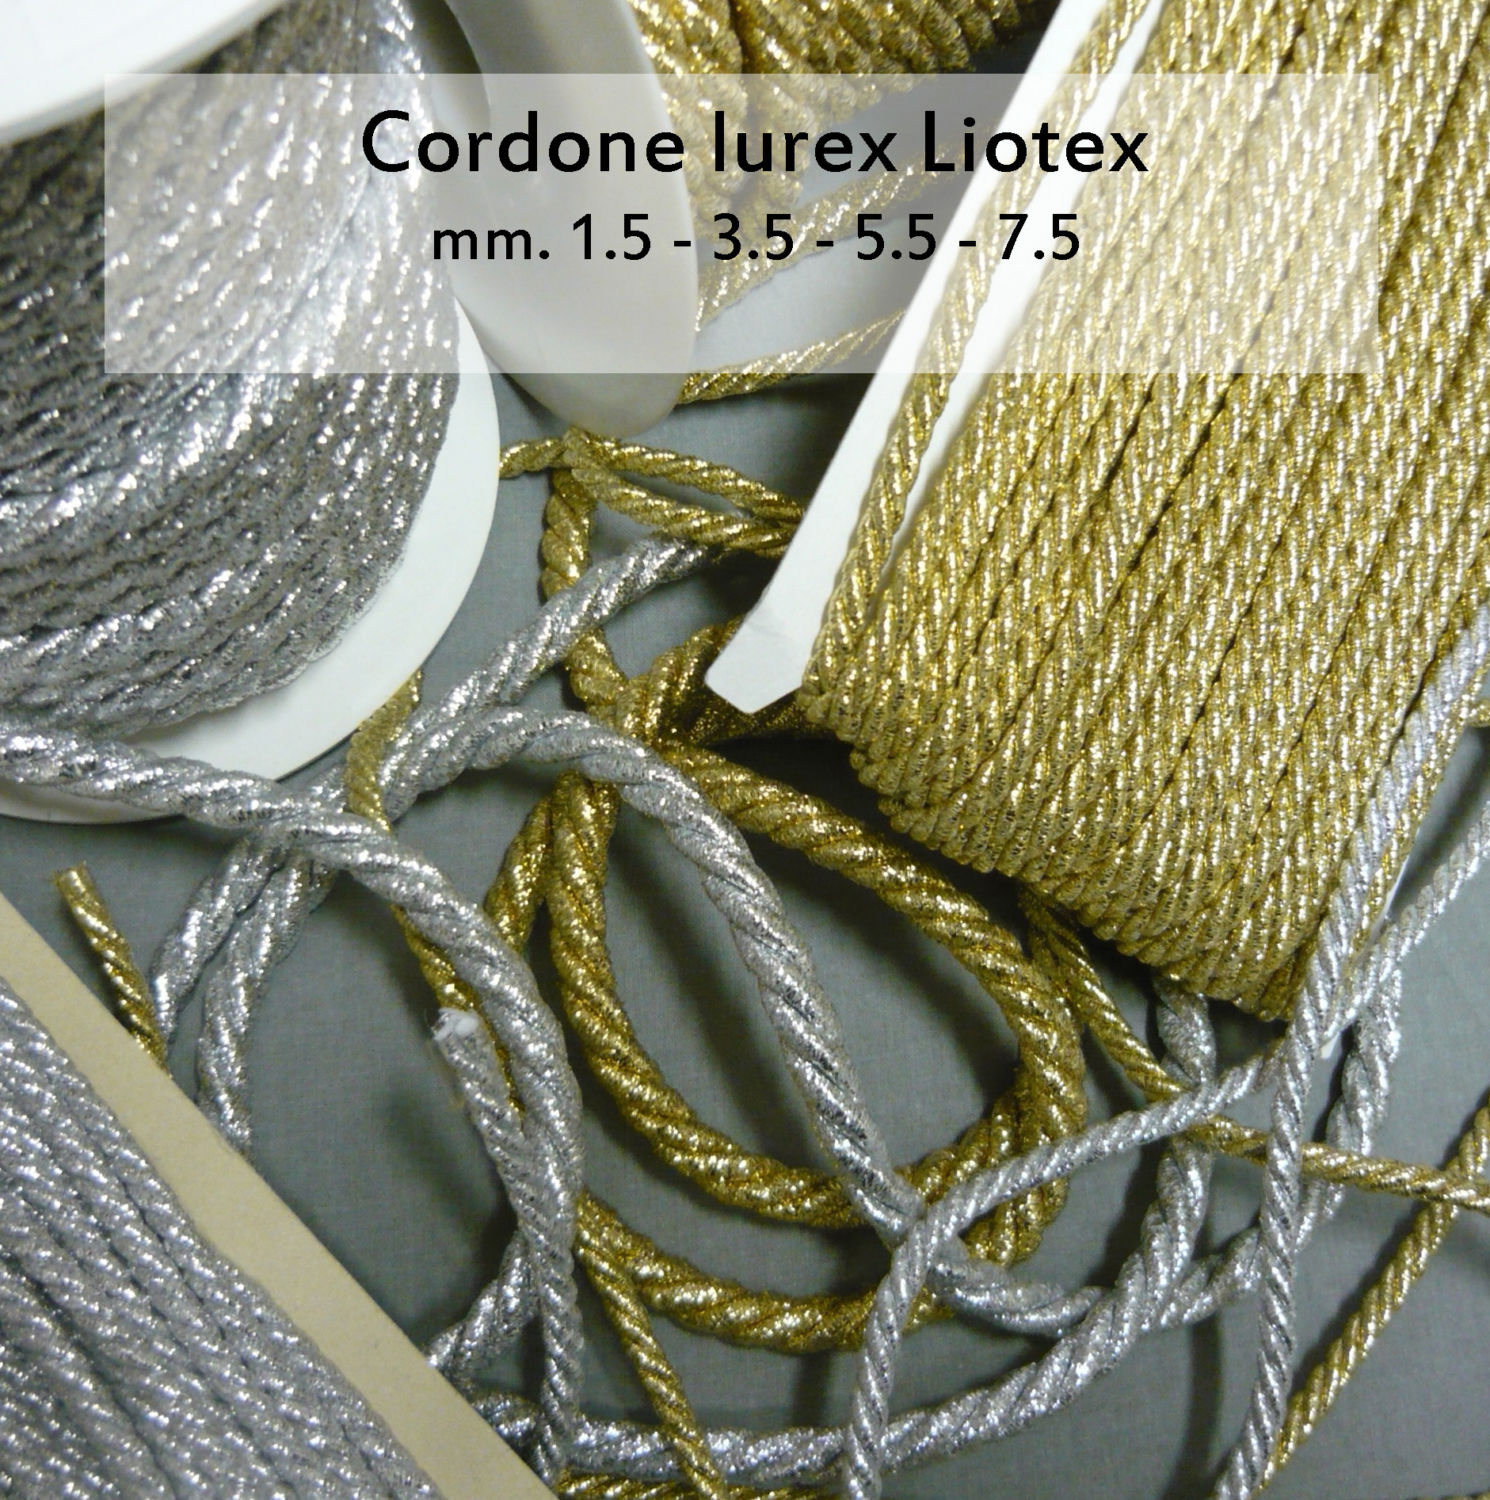 Cordone lurex Liotex